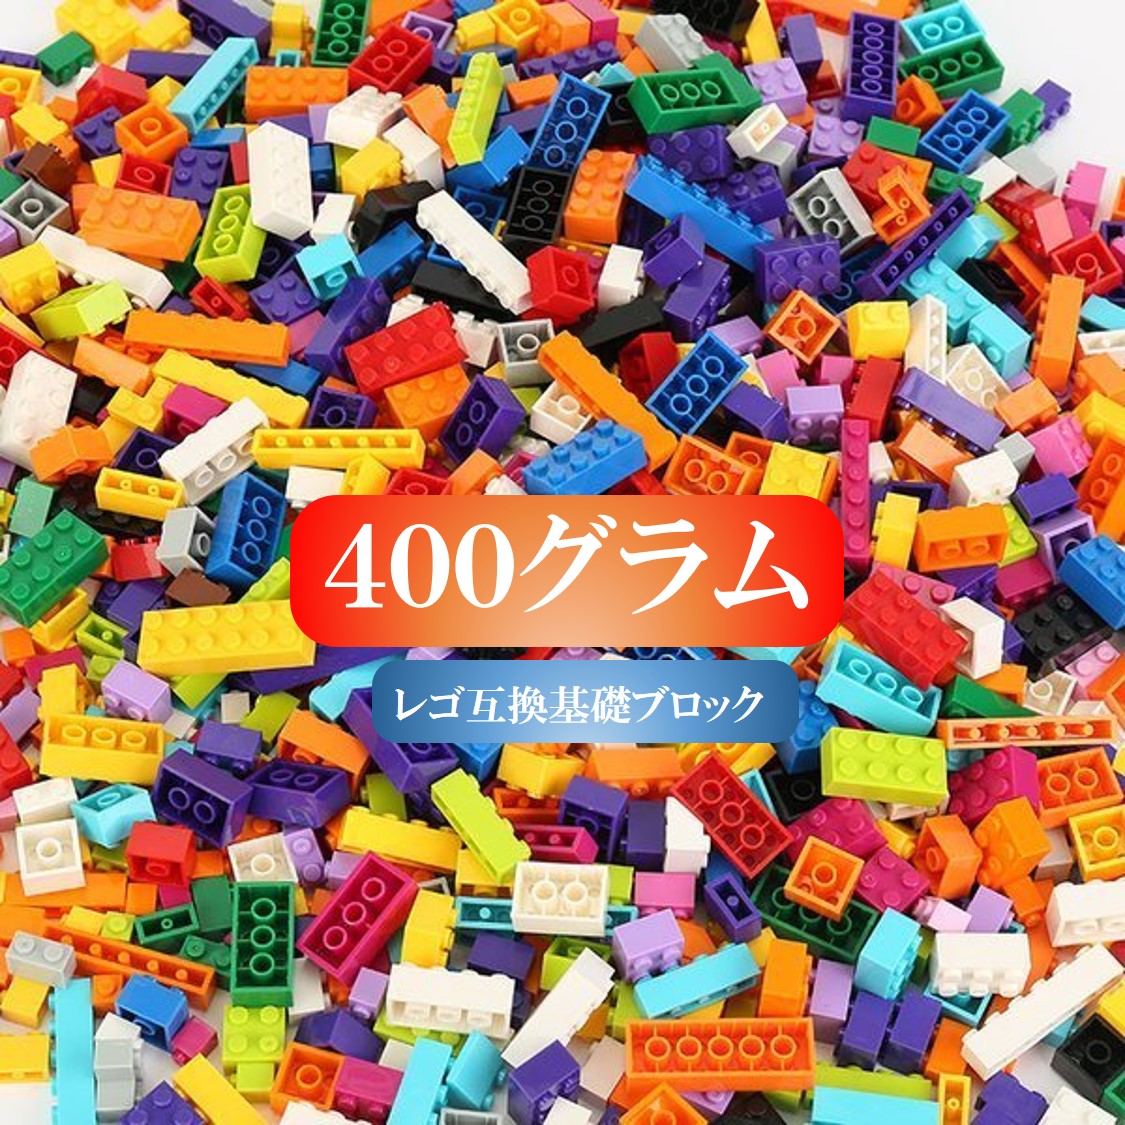 大容量 ブロック 400グラムセット 送料無料 レゴブロック 大容量 400グラムセット 8種 10色 レゴ互換 LEGO クラシック おもちゃ キッズ 子ども 男の子と女の子 送料無料